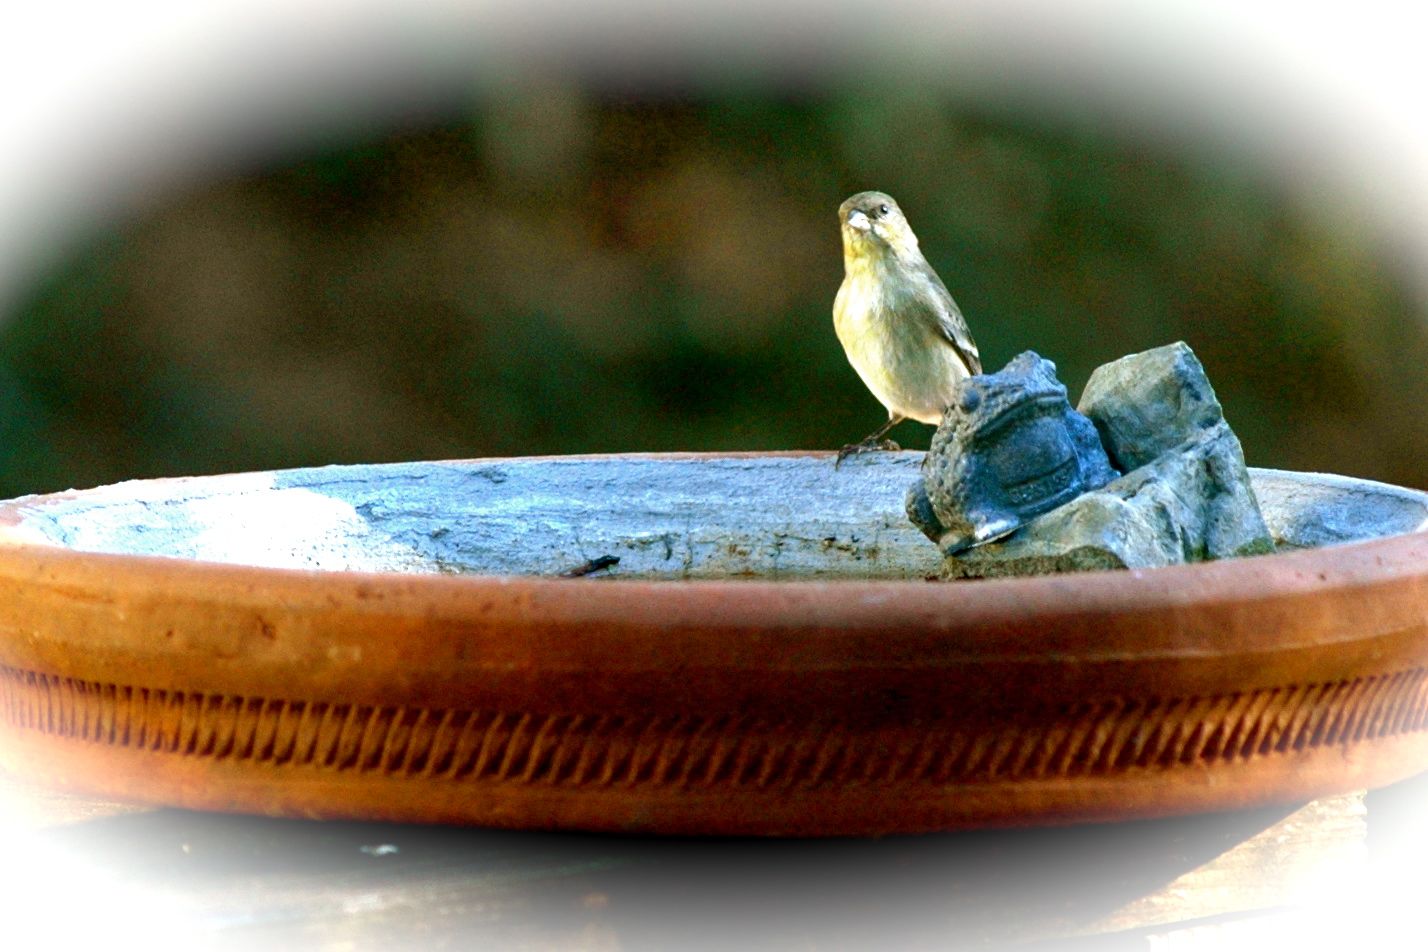 Finch on the bird bath